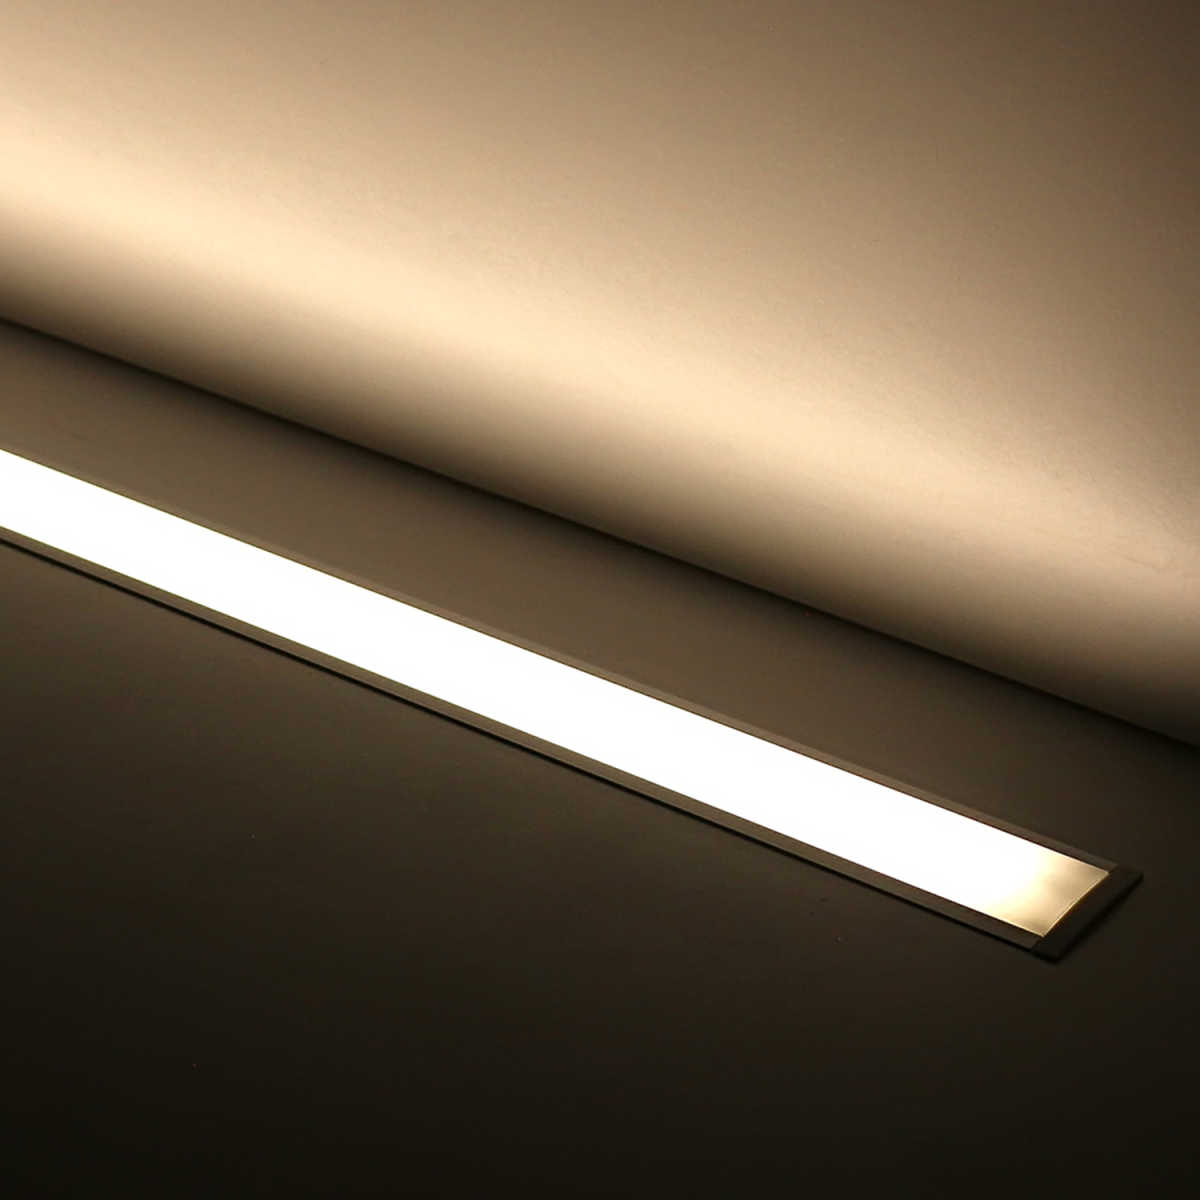 Einbau LED Lichtleiste "Inside max" diffus | mit 24V High-Performance LED-Streifen 240x 2835 LEDs 21W/m 3090 lm/m | neutralweiß 4000K |